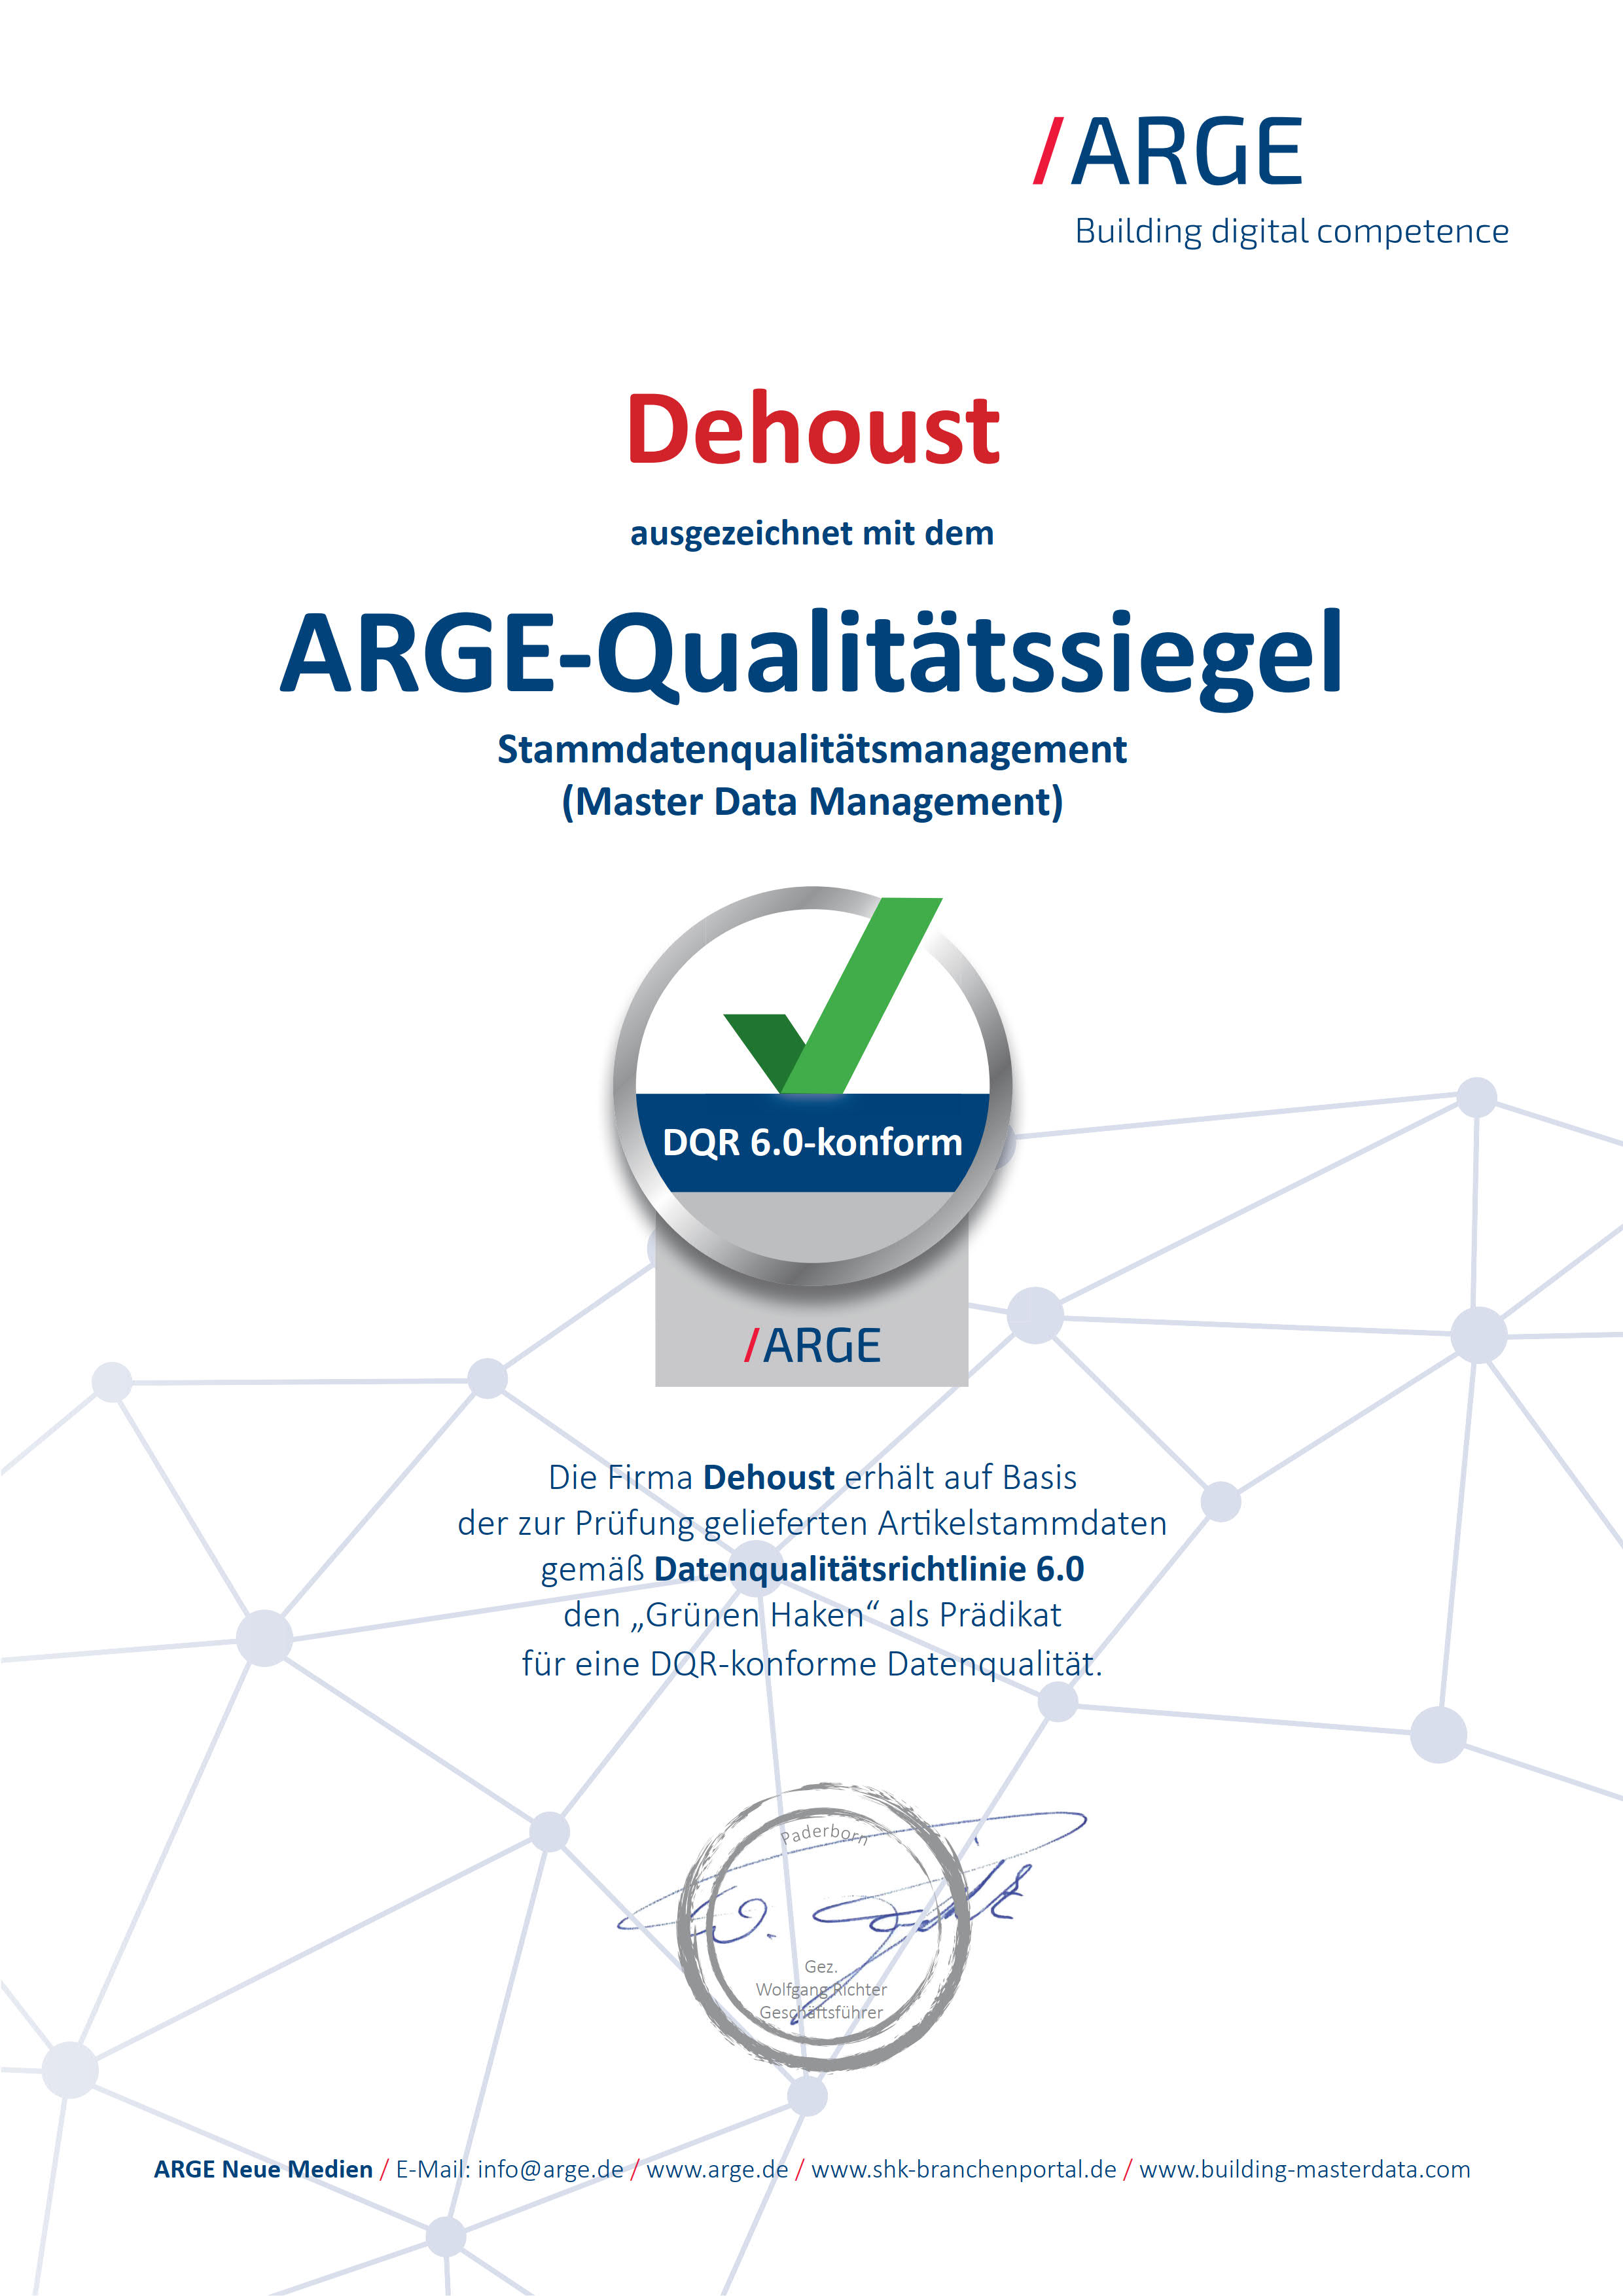 Dehoust ausgezeichnet mit dem ARGE-Qualitätssiegel Stammdatenqualitätsmanagement (Master Data Management) DQR 6.0-konform